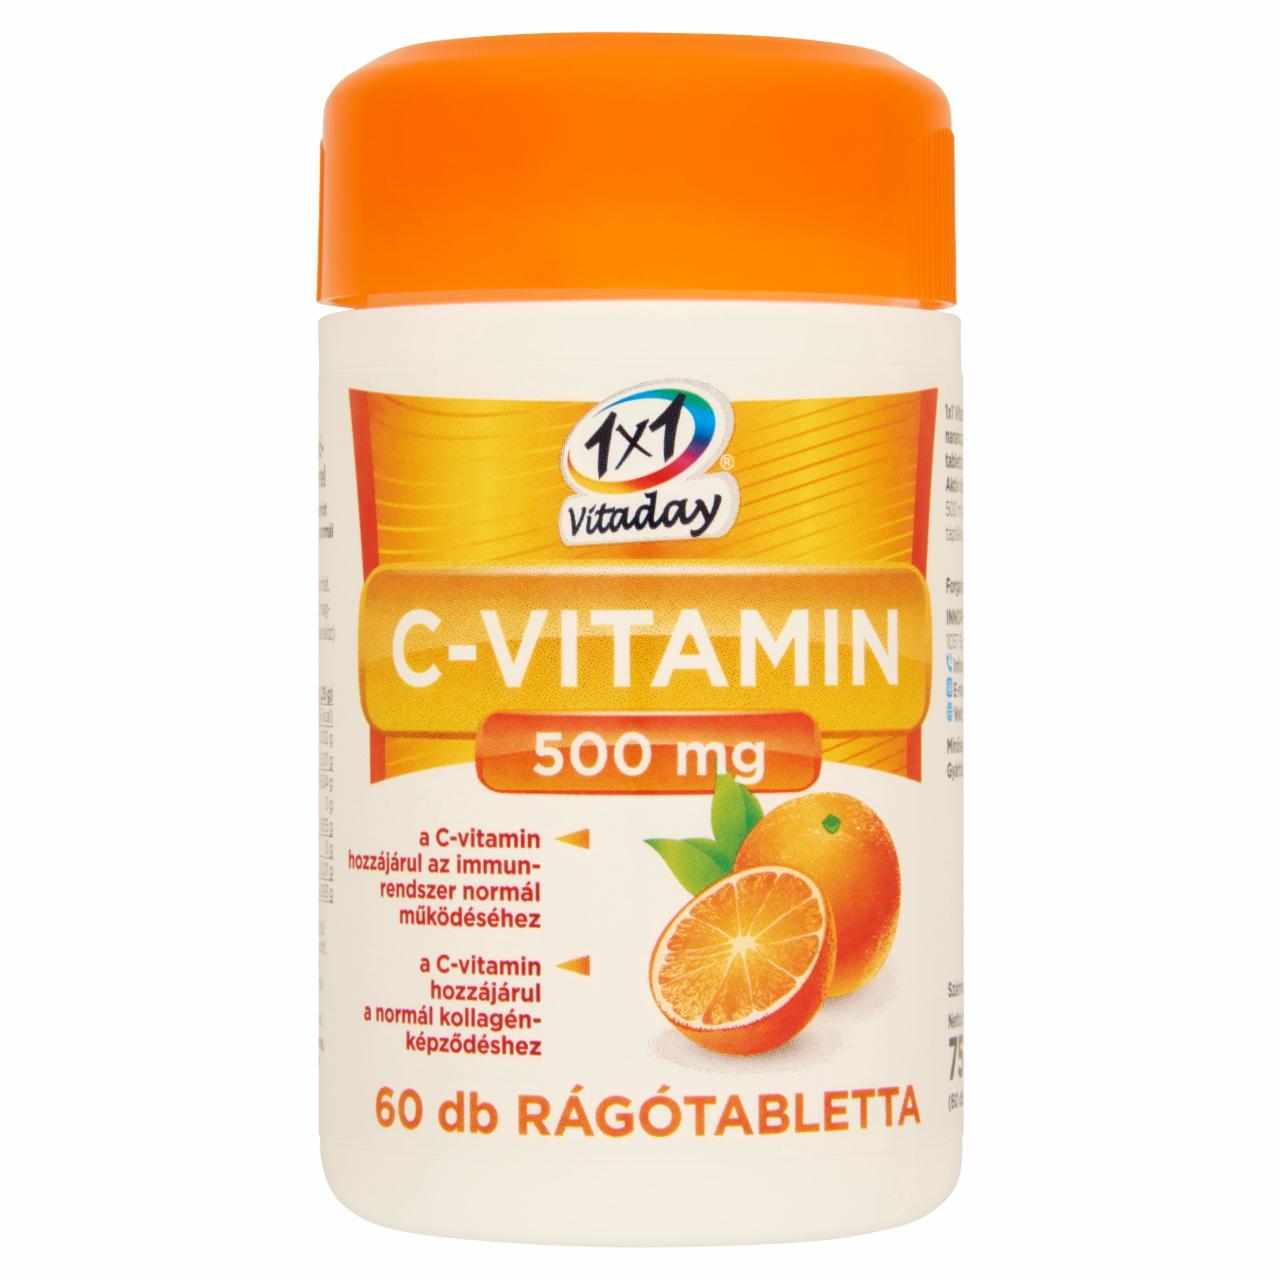 Képek - 1x1 Vitamin C-vitamin 500 mg narancsízű étrend-kiegészítő rágótabletta 60 x 1250 mg (75 g)